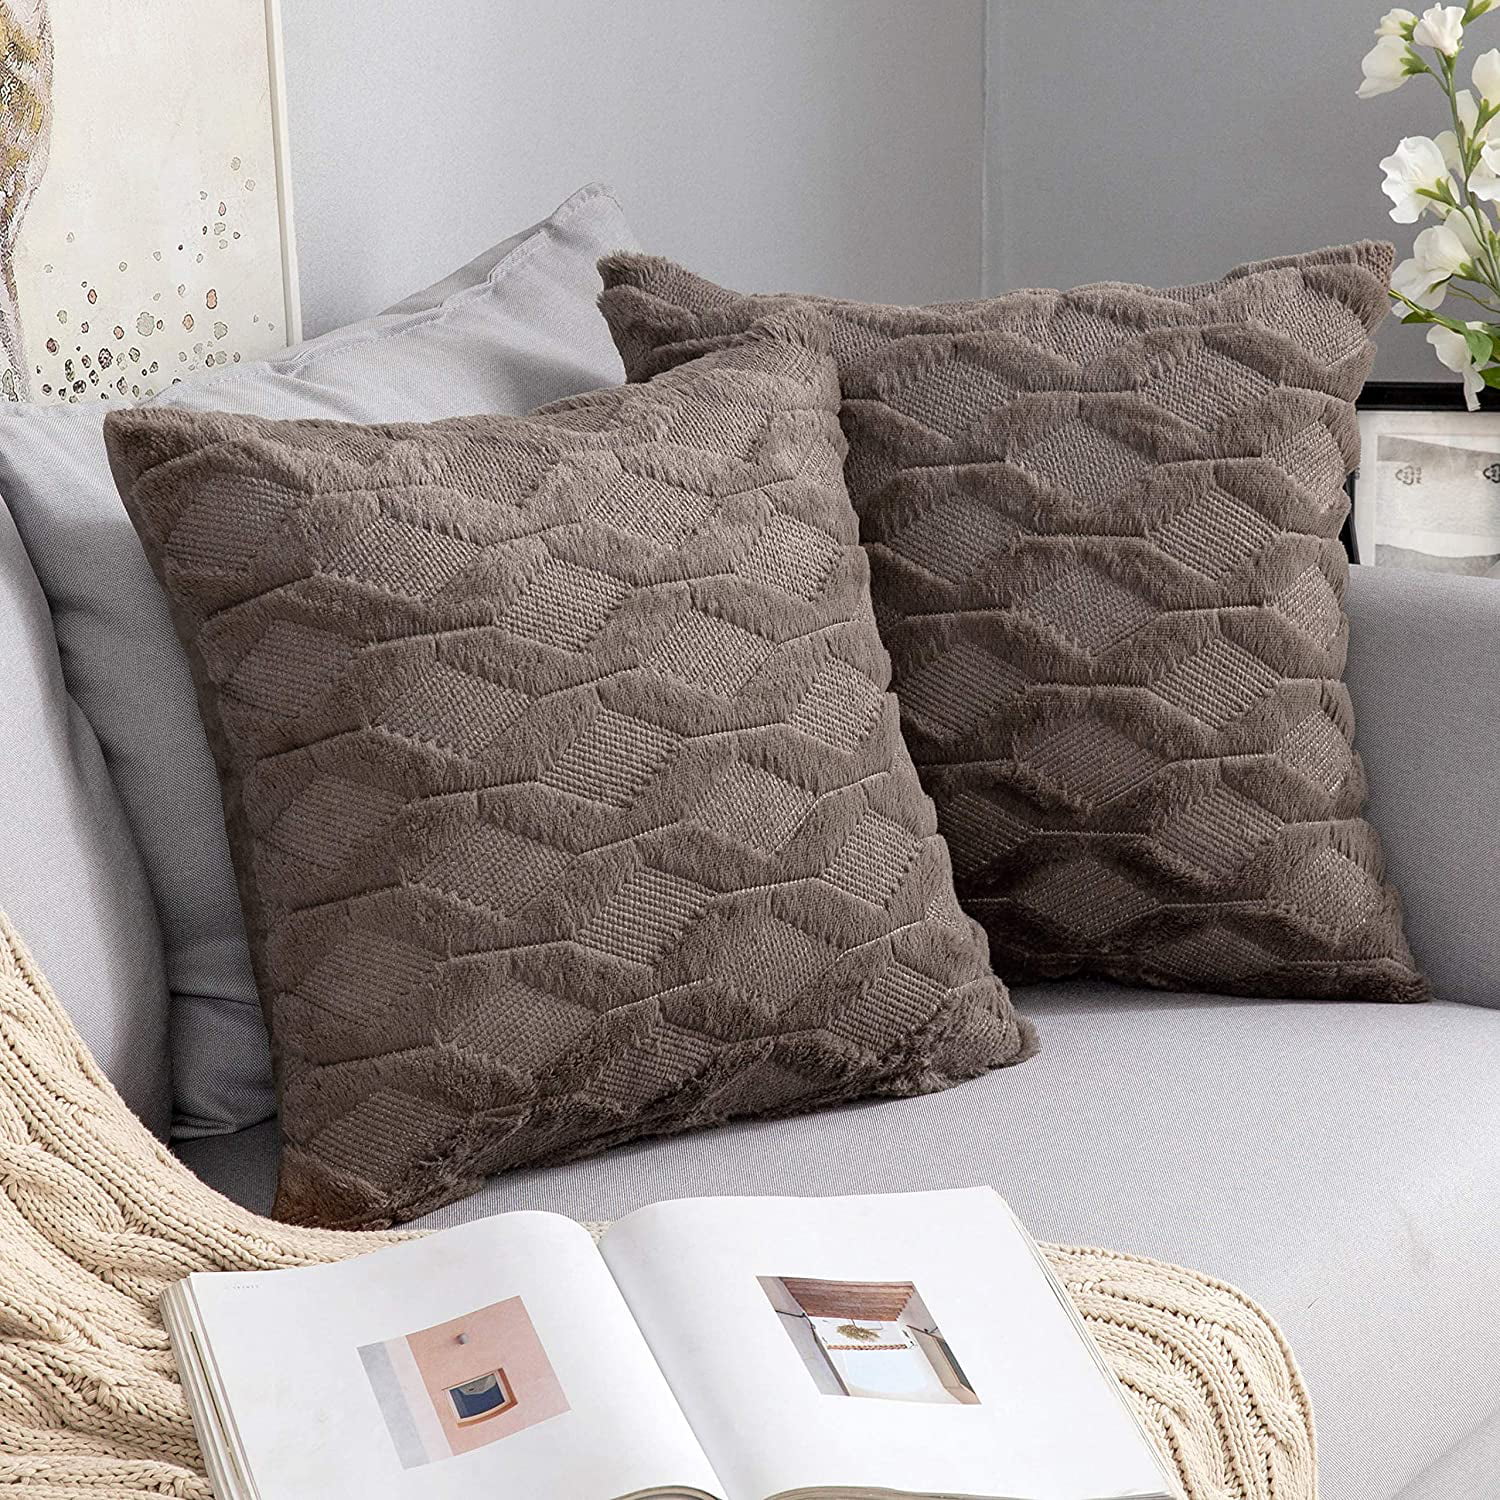 18”x18” Soft Sofa Chair Bed Pillow Bohemian Faux Rabbit Long Hair Case Cover 